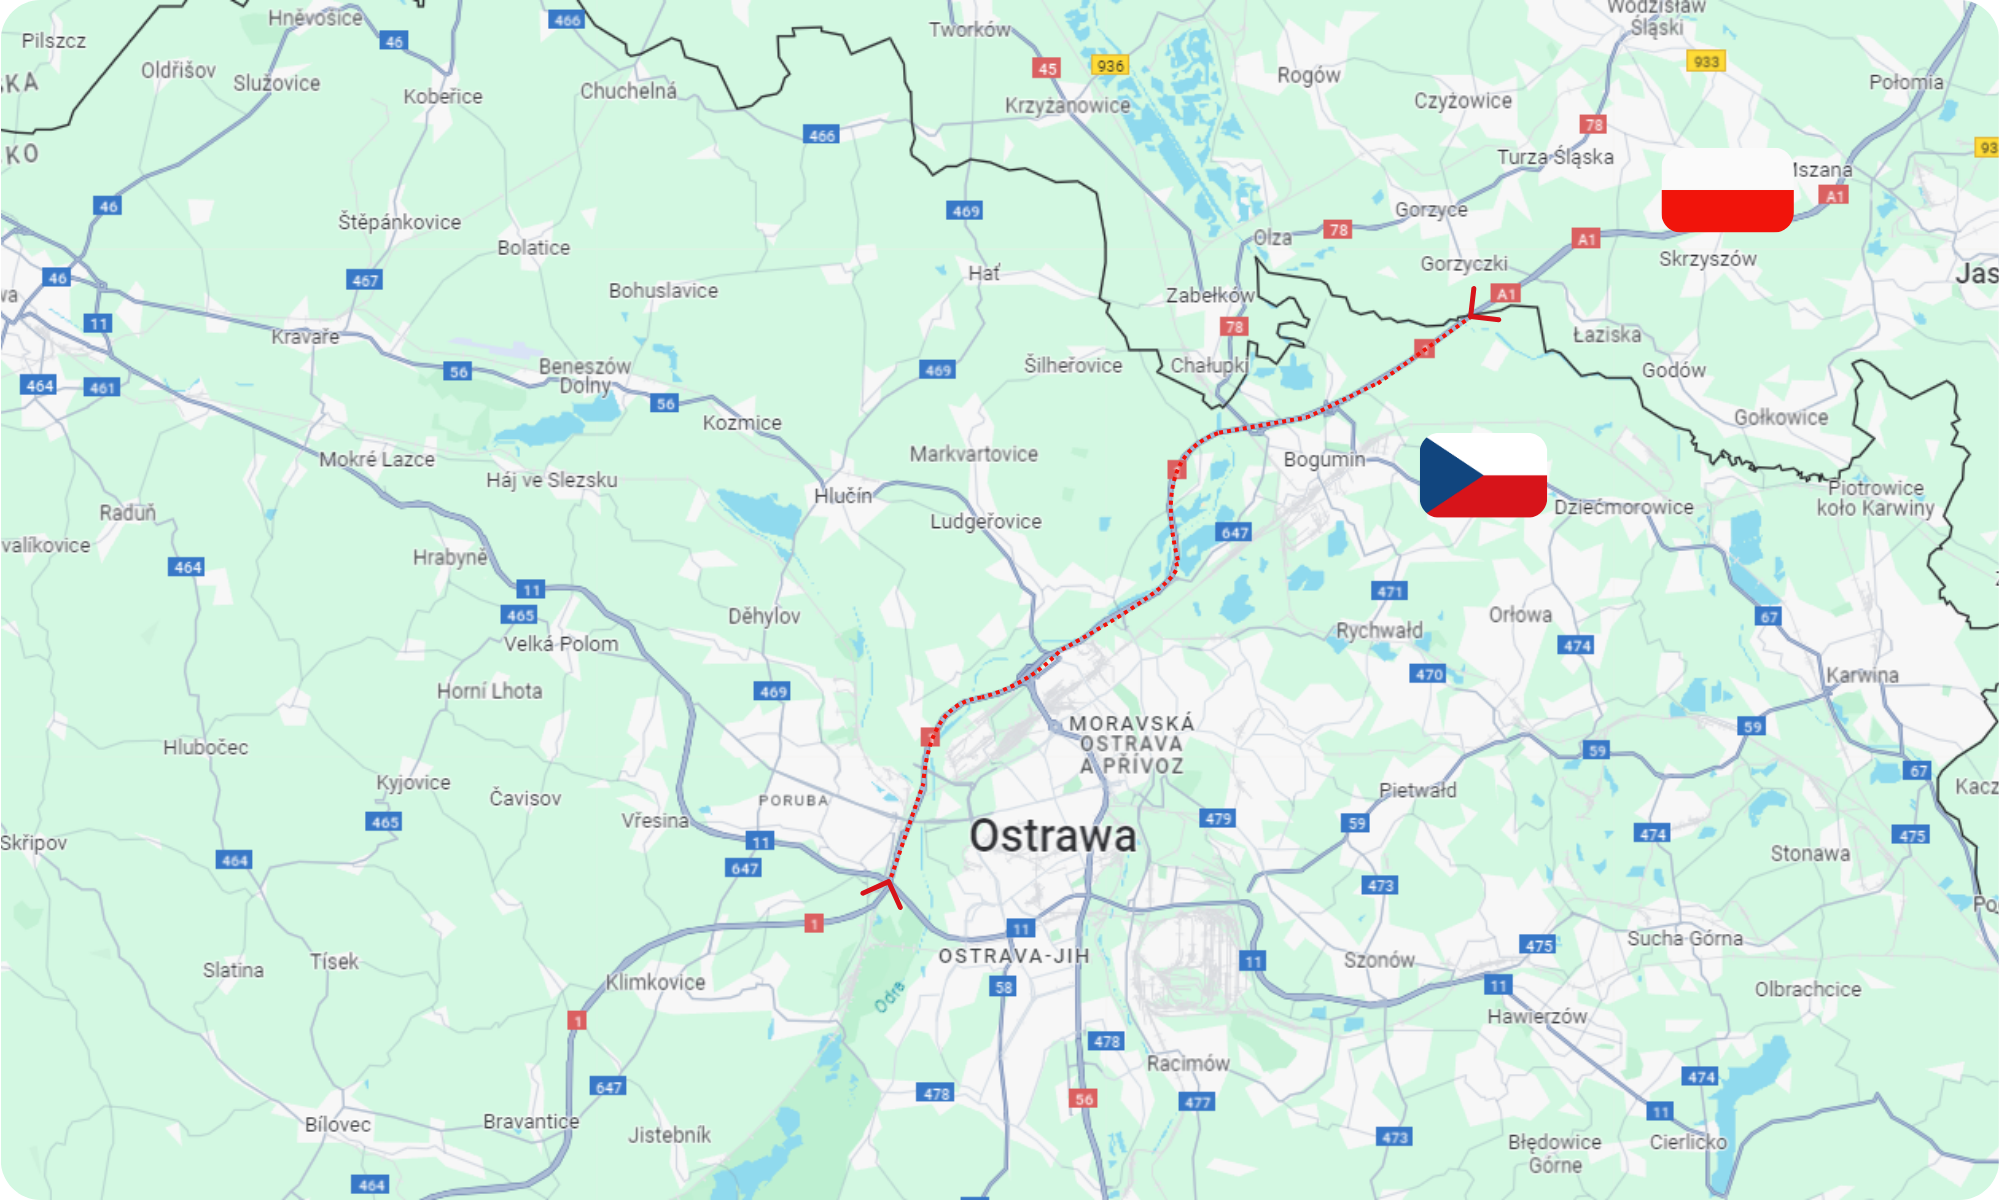 Odcinek bezpłatny z Polski do Ostrawy